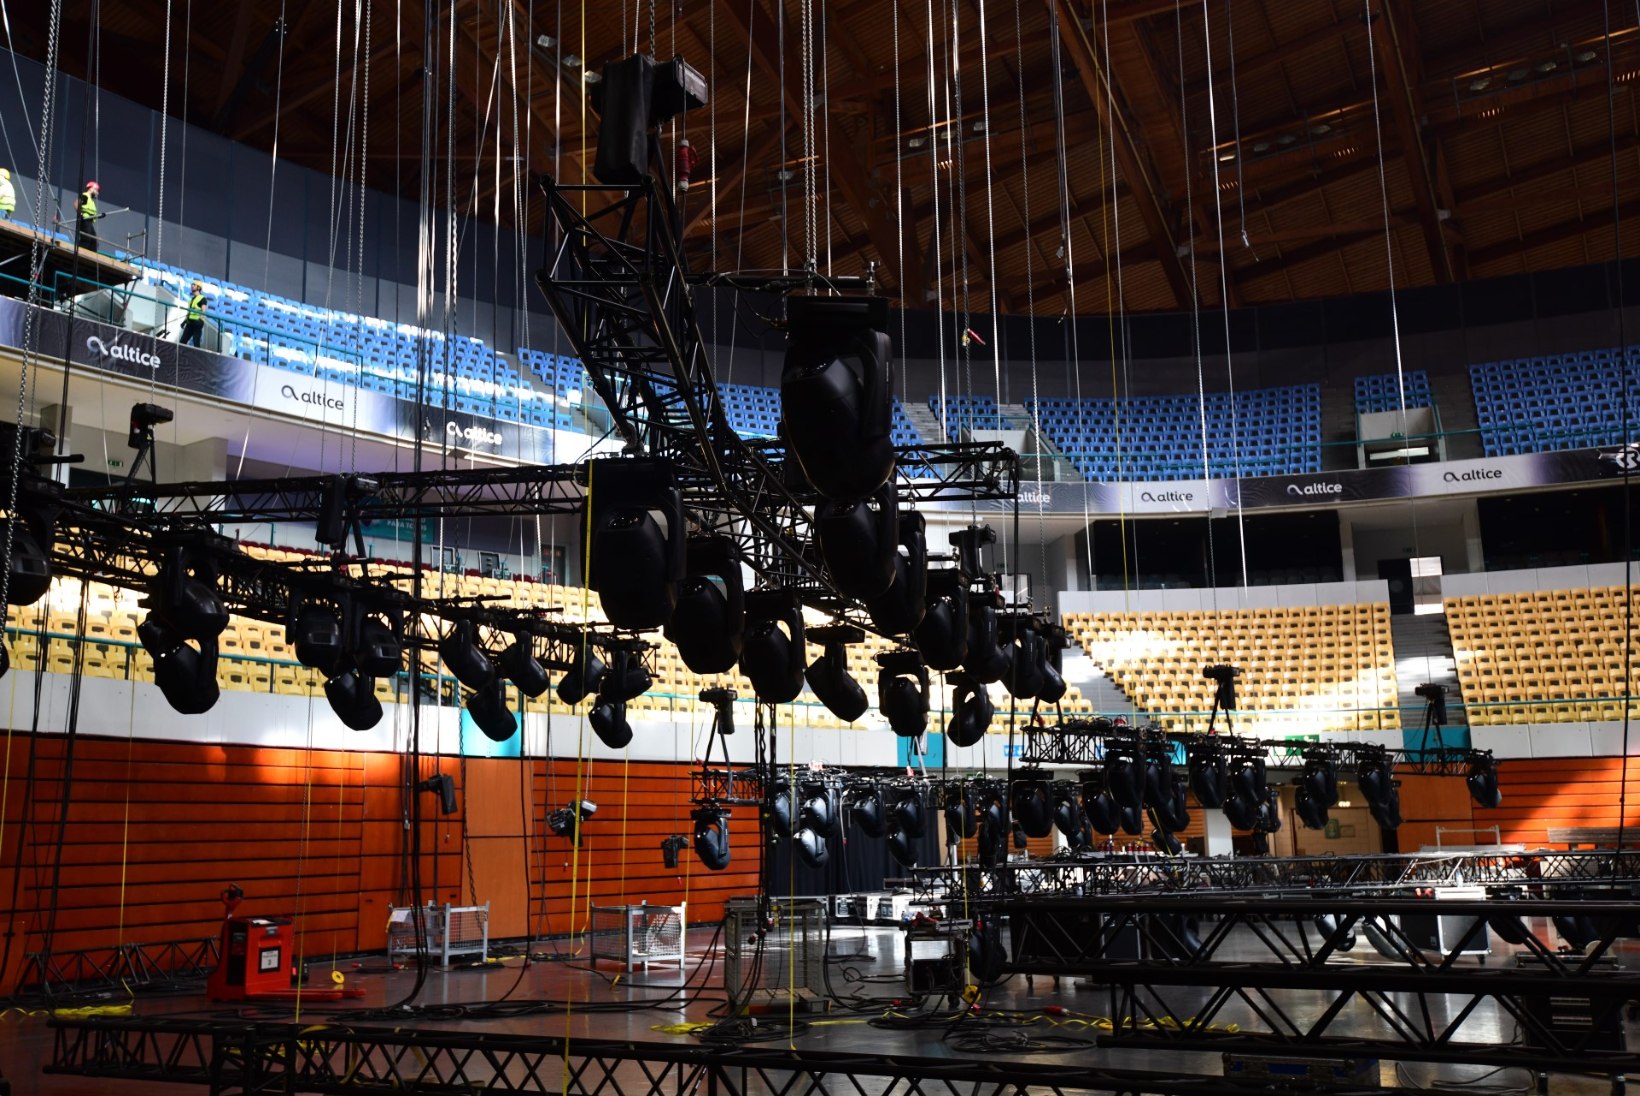 FOTOD JA ÕL INTERVJUU | Eurovisioni produktsiooniboss Ola Melzig: tänavu ei kasutata laval LED-ekraane, nii on fookus artistil